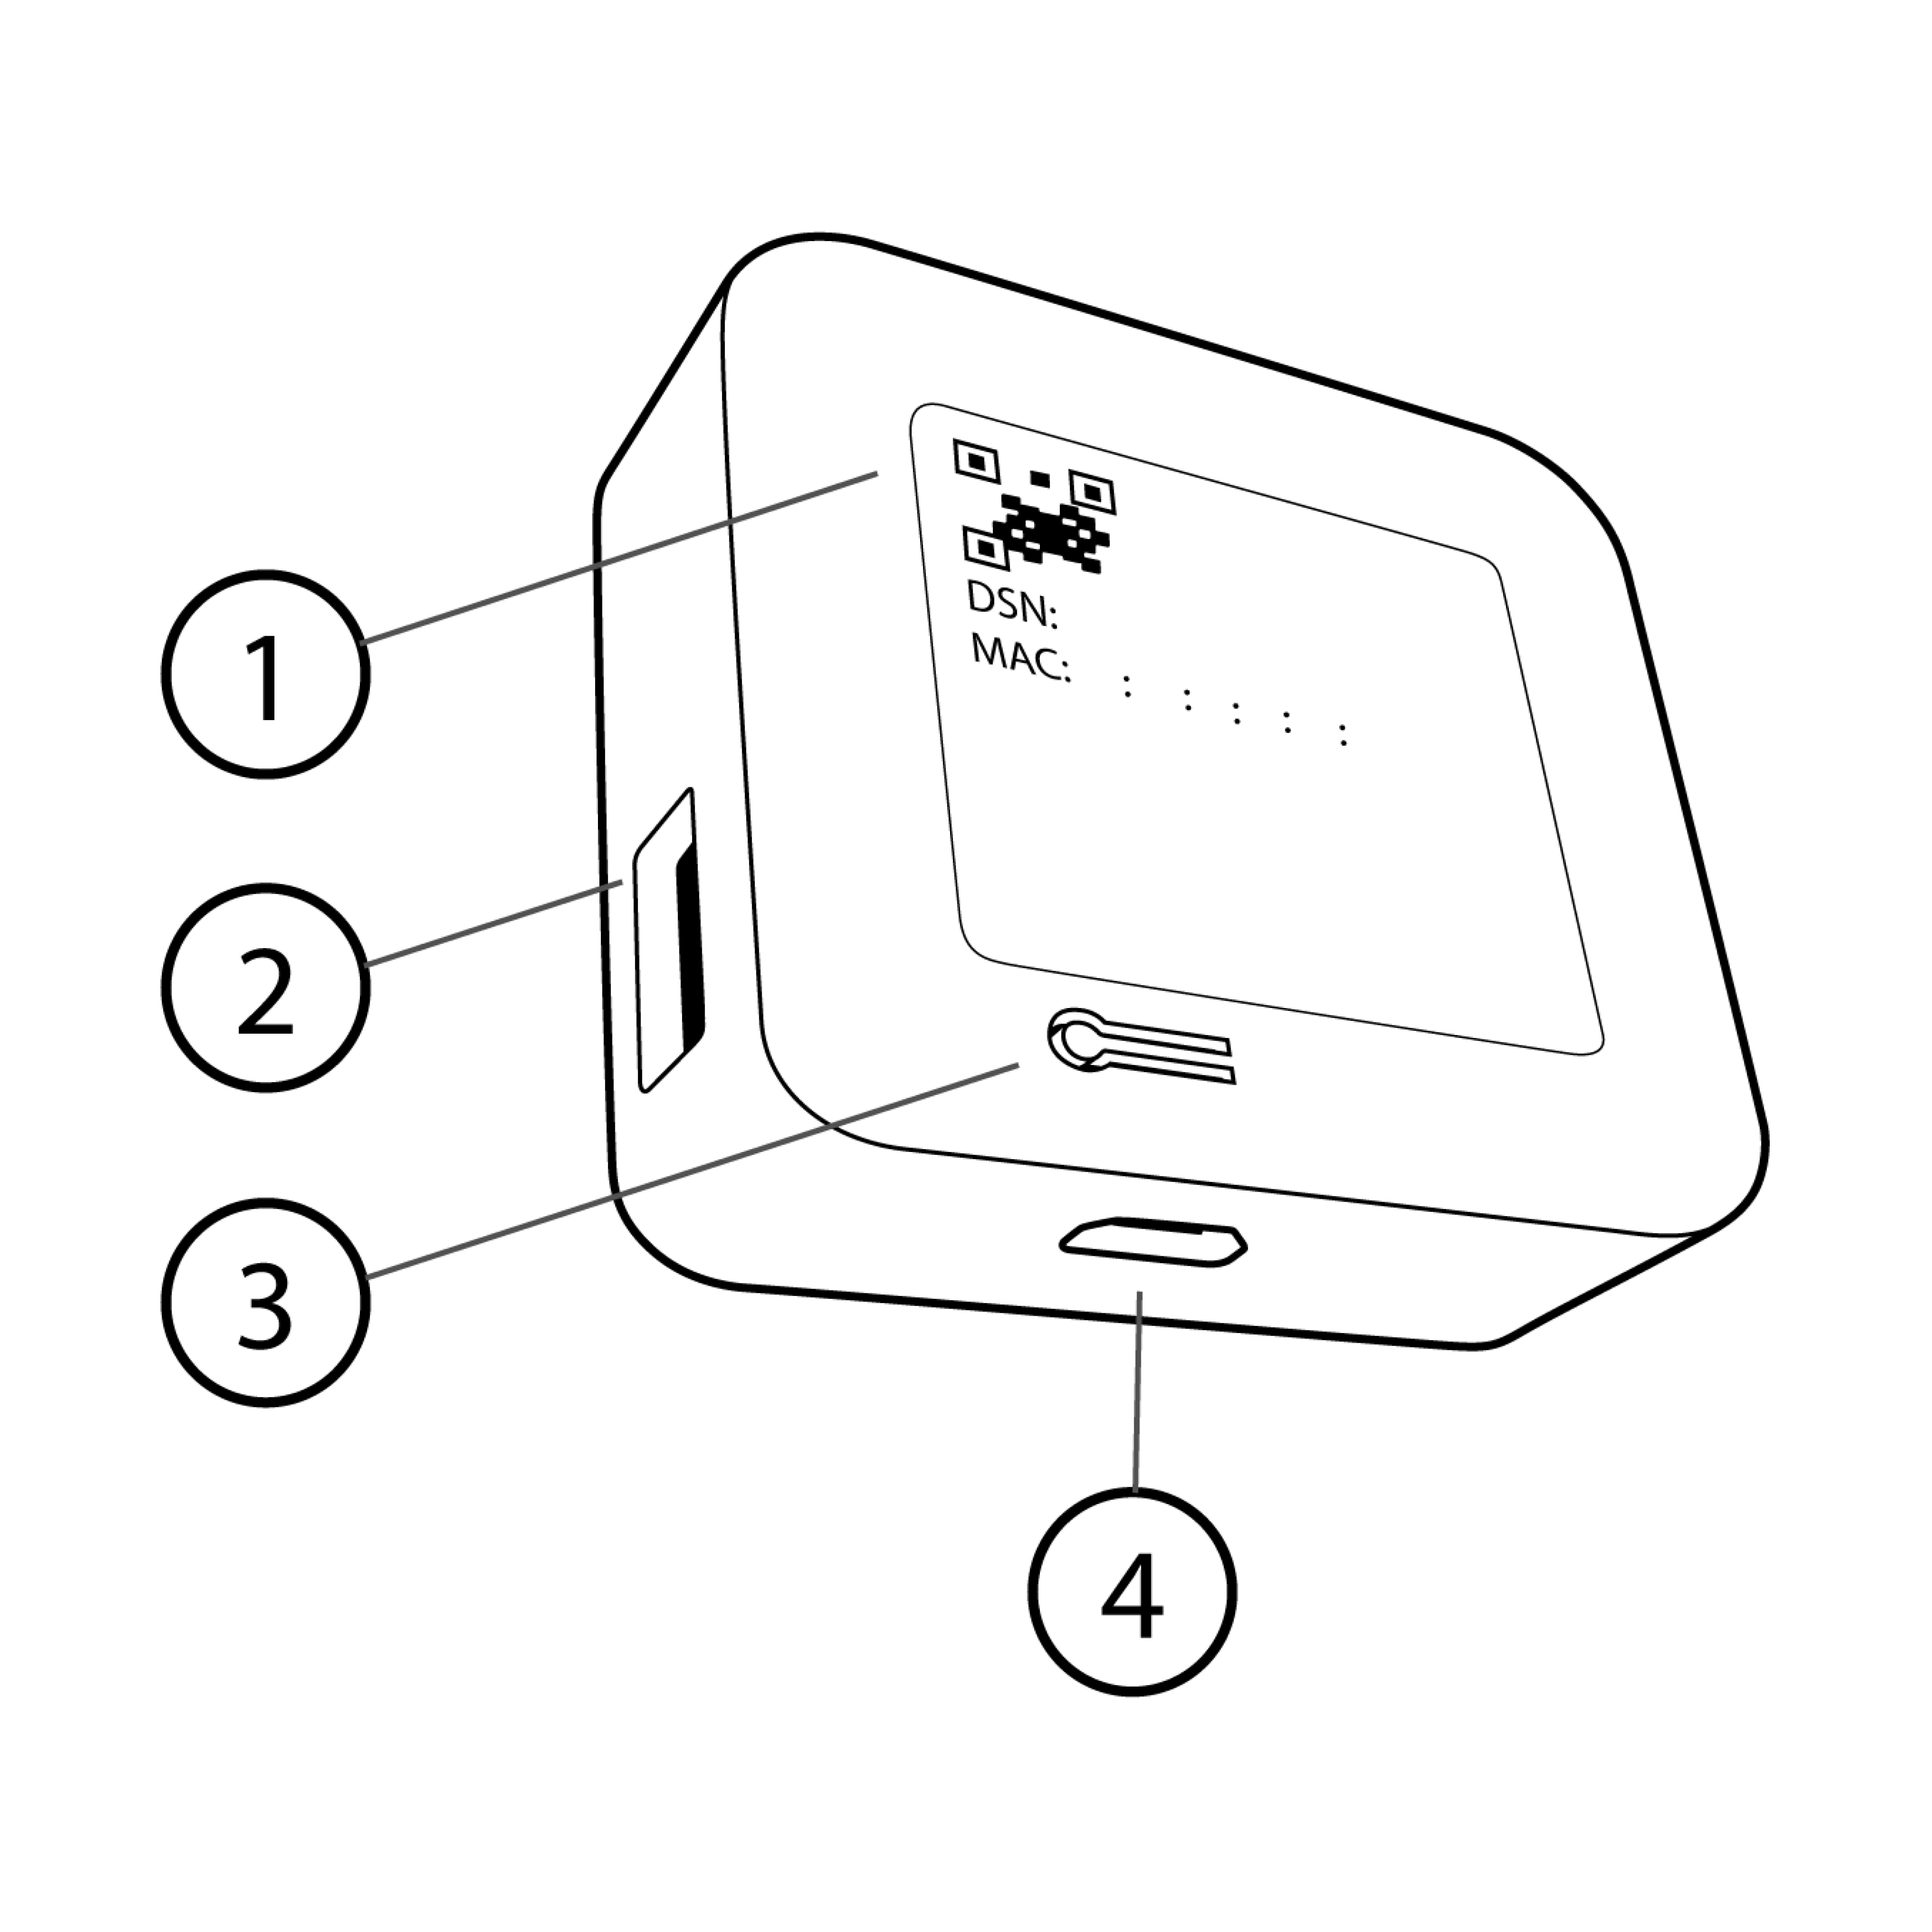 Bild zeigt ein Synchronisierungsmodul mit nummerierten Teilen, einschließlich QR-Code, USB-Anschluss, Reset-Taste und Stromanschluss.